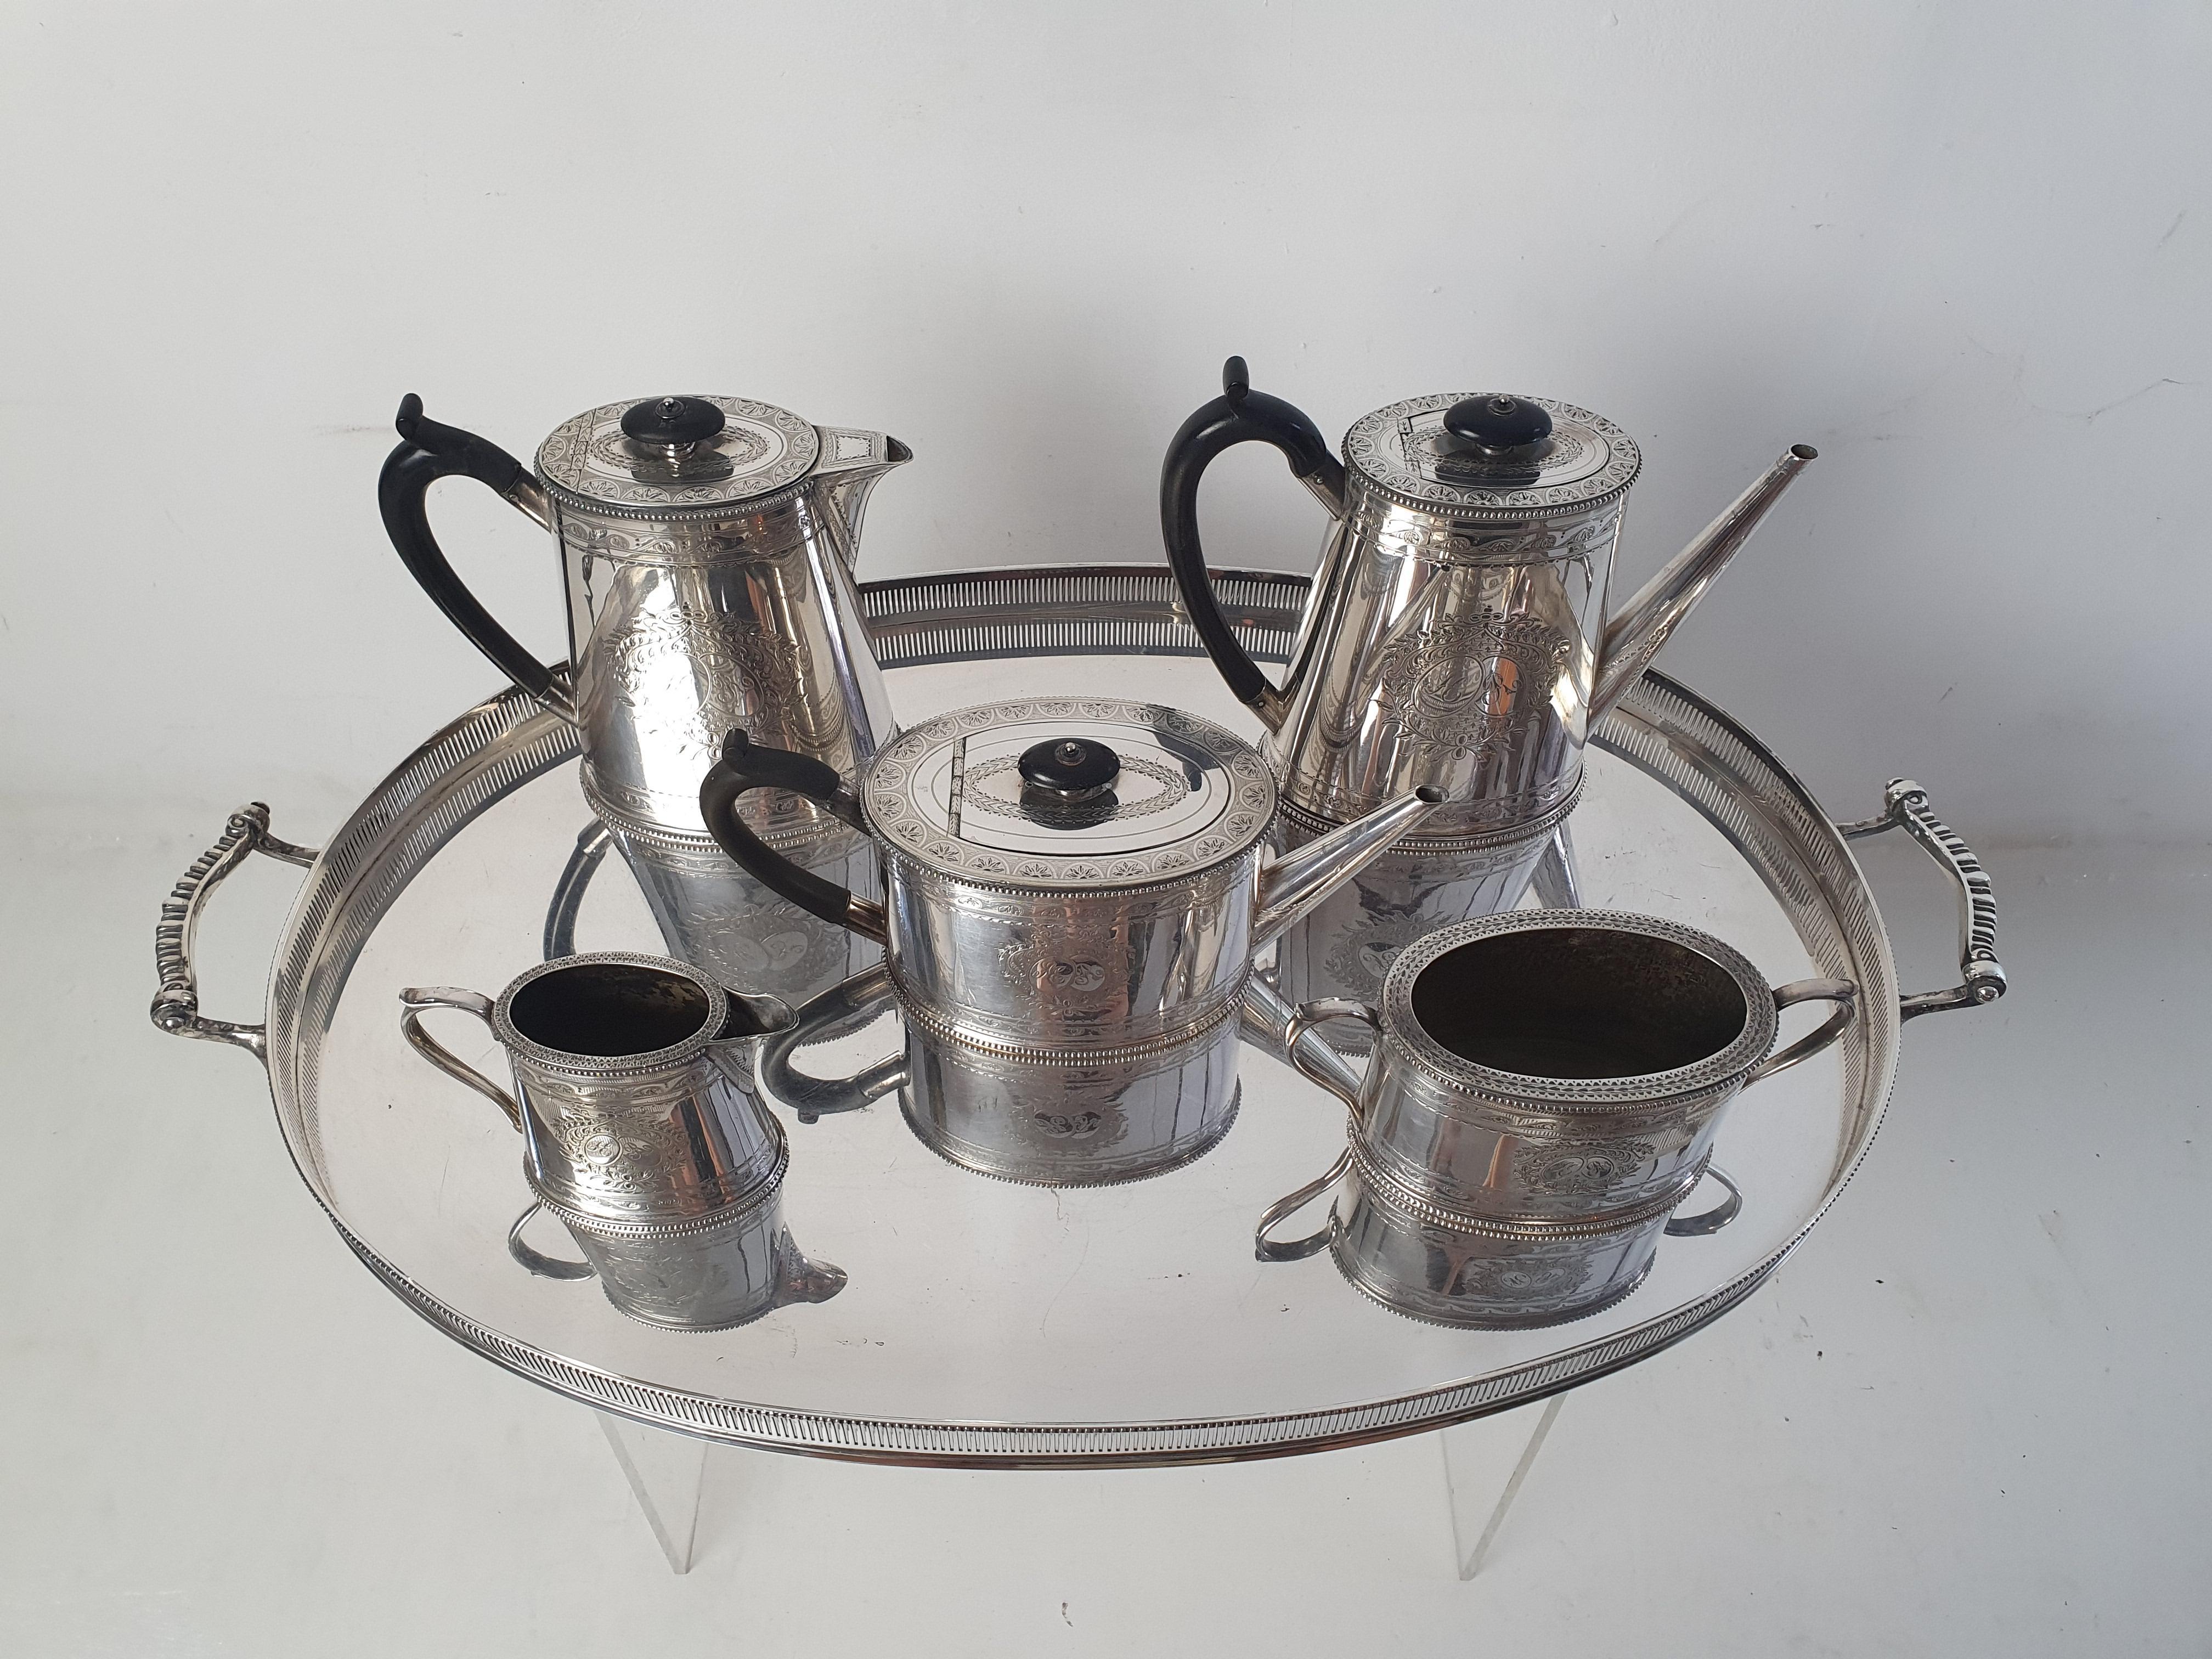 Service à thé et à café classique en métal argenté de haute qualité. Les pièces sont ornées de gravures élégantes et élaborées qui encadrent les initiales 